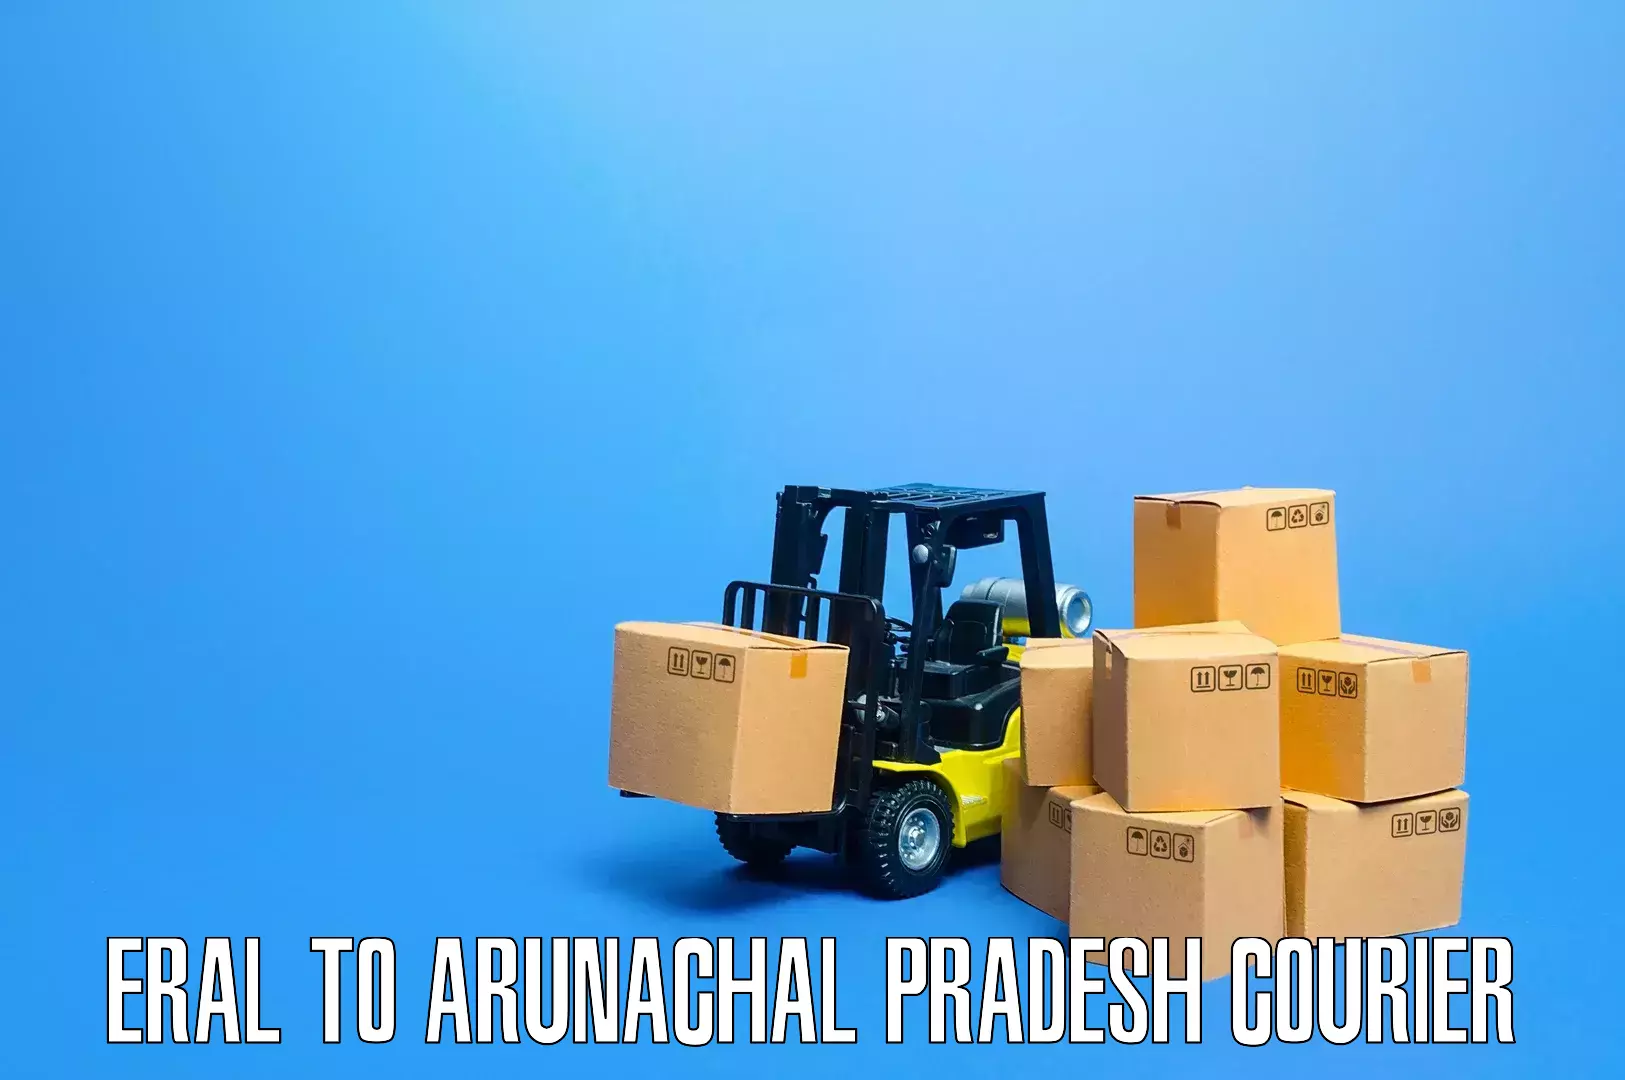 Seamless moving process Eral to Arunachal Pradesh